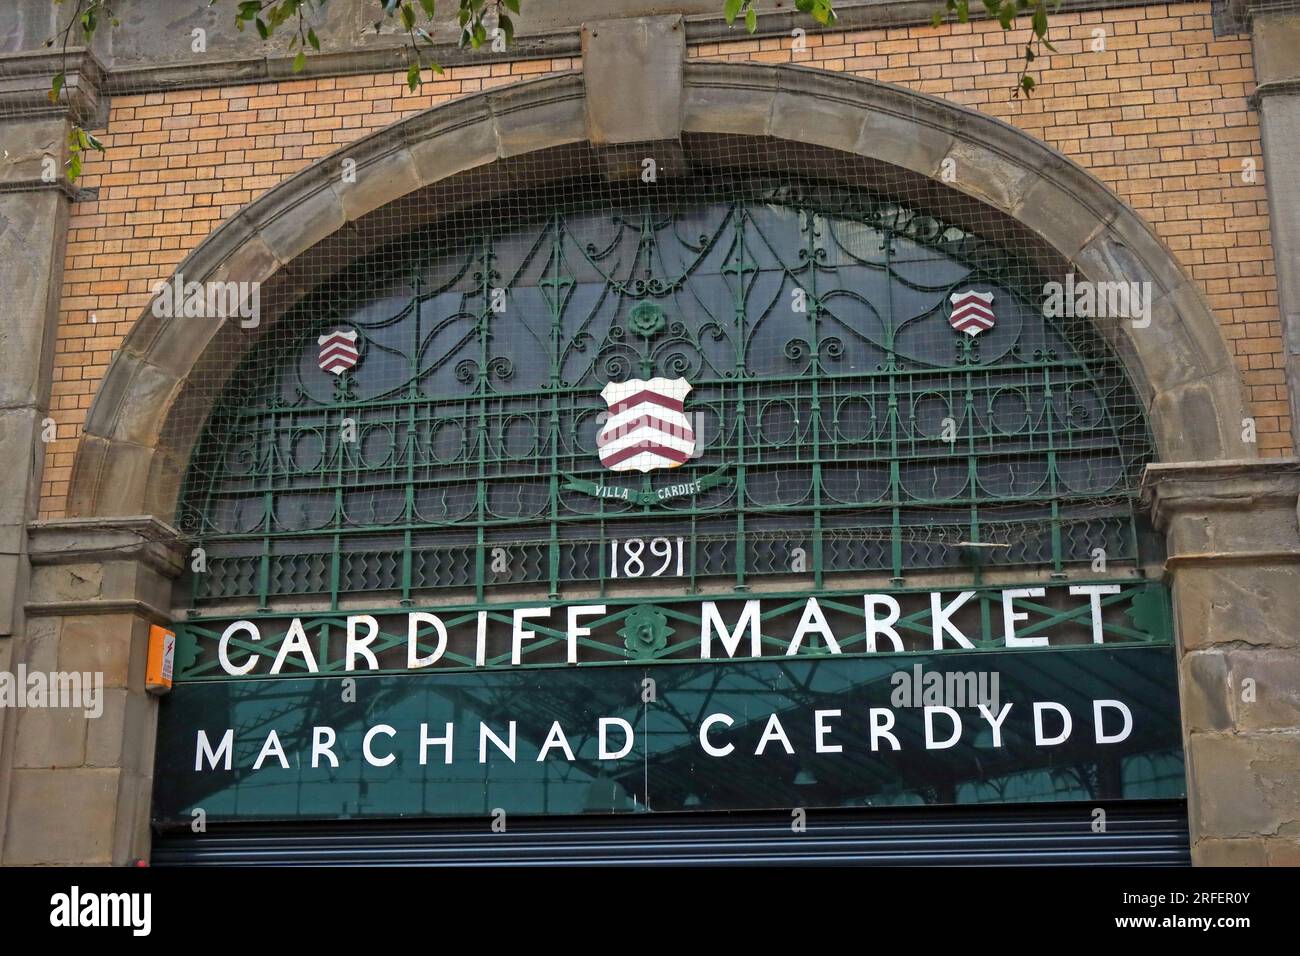 Trinity Street entrée au marché de Cardiff, Marchnad Caaerdydd, quartier du château, 49 St. Mary Street, Cardiff, pays de Galles, Royaume-Uni, CF10 1au Banque D'Images